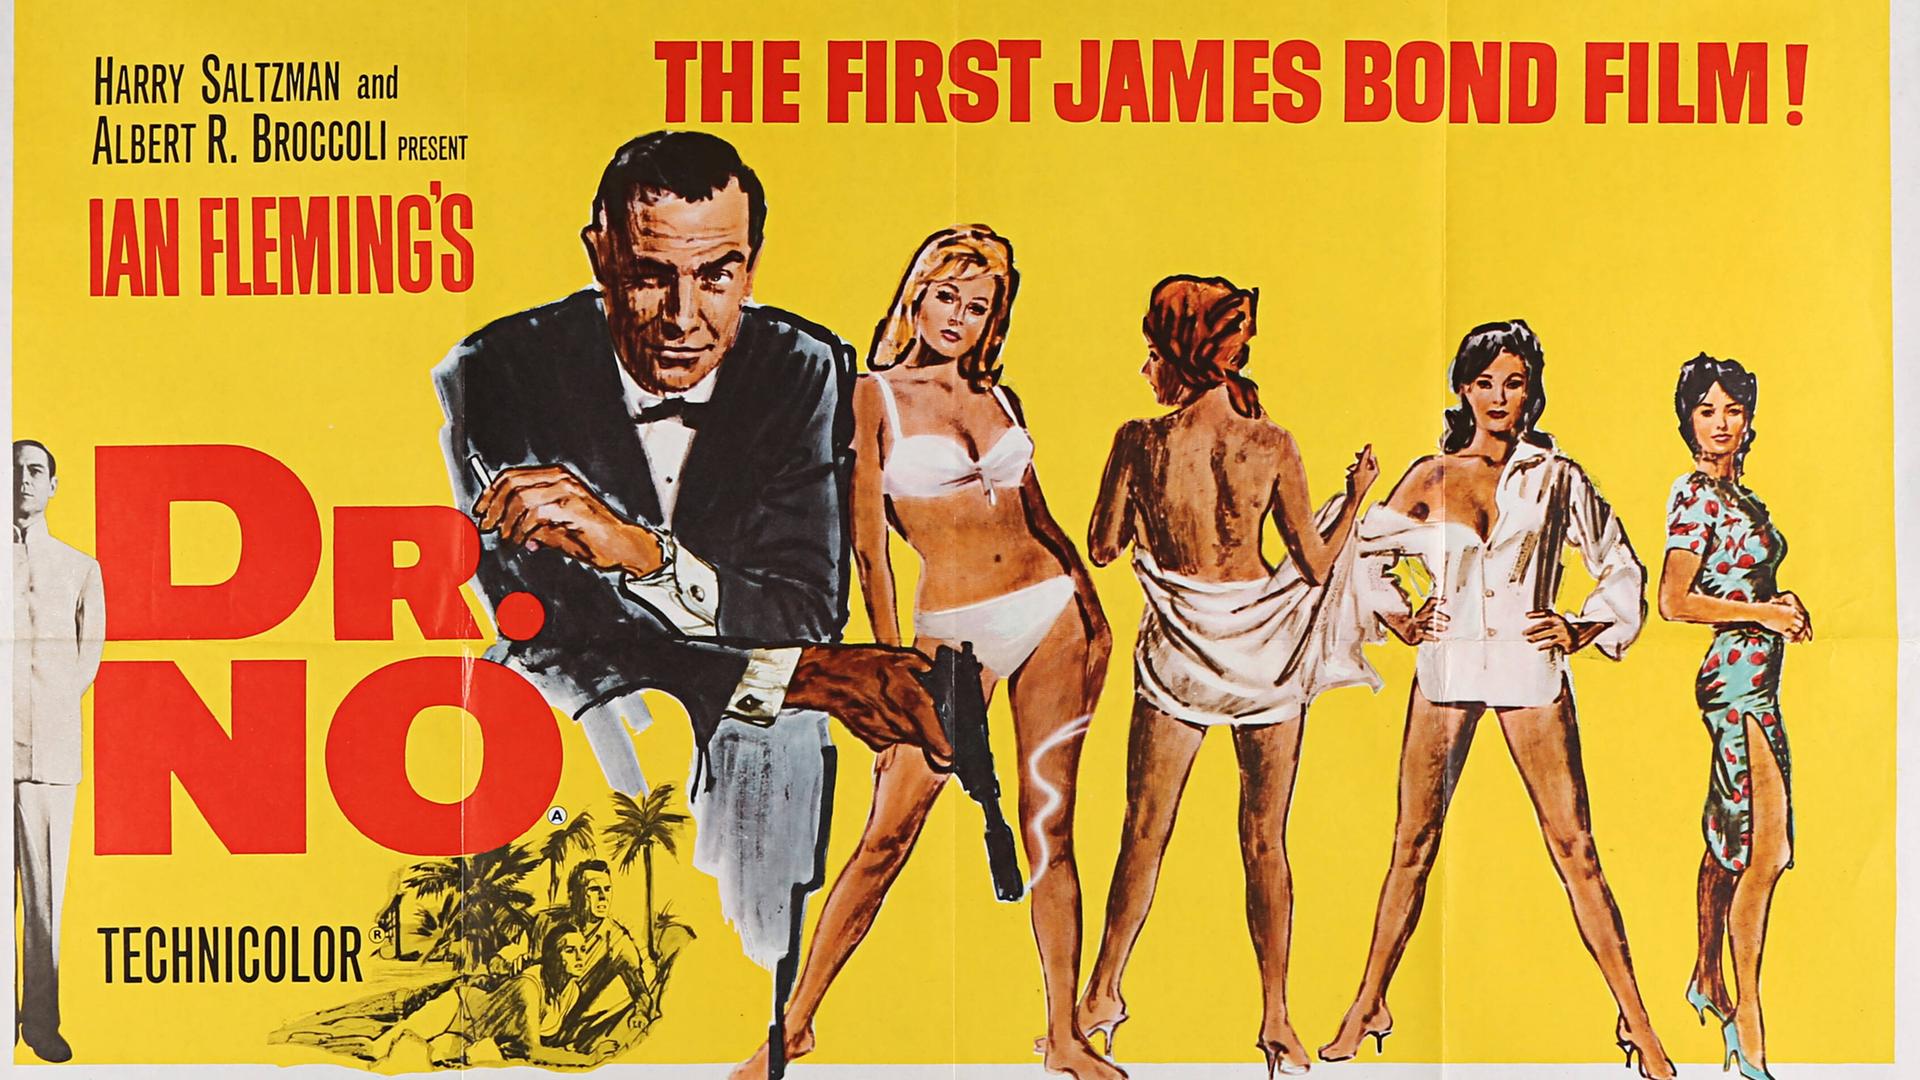 Ein gemaltes Plakat zum ersten James-Bond-Film "Dr. No" mit Sean Connery in der Hauptrolle und Ursula Andress als Bond-Girl